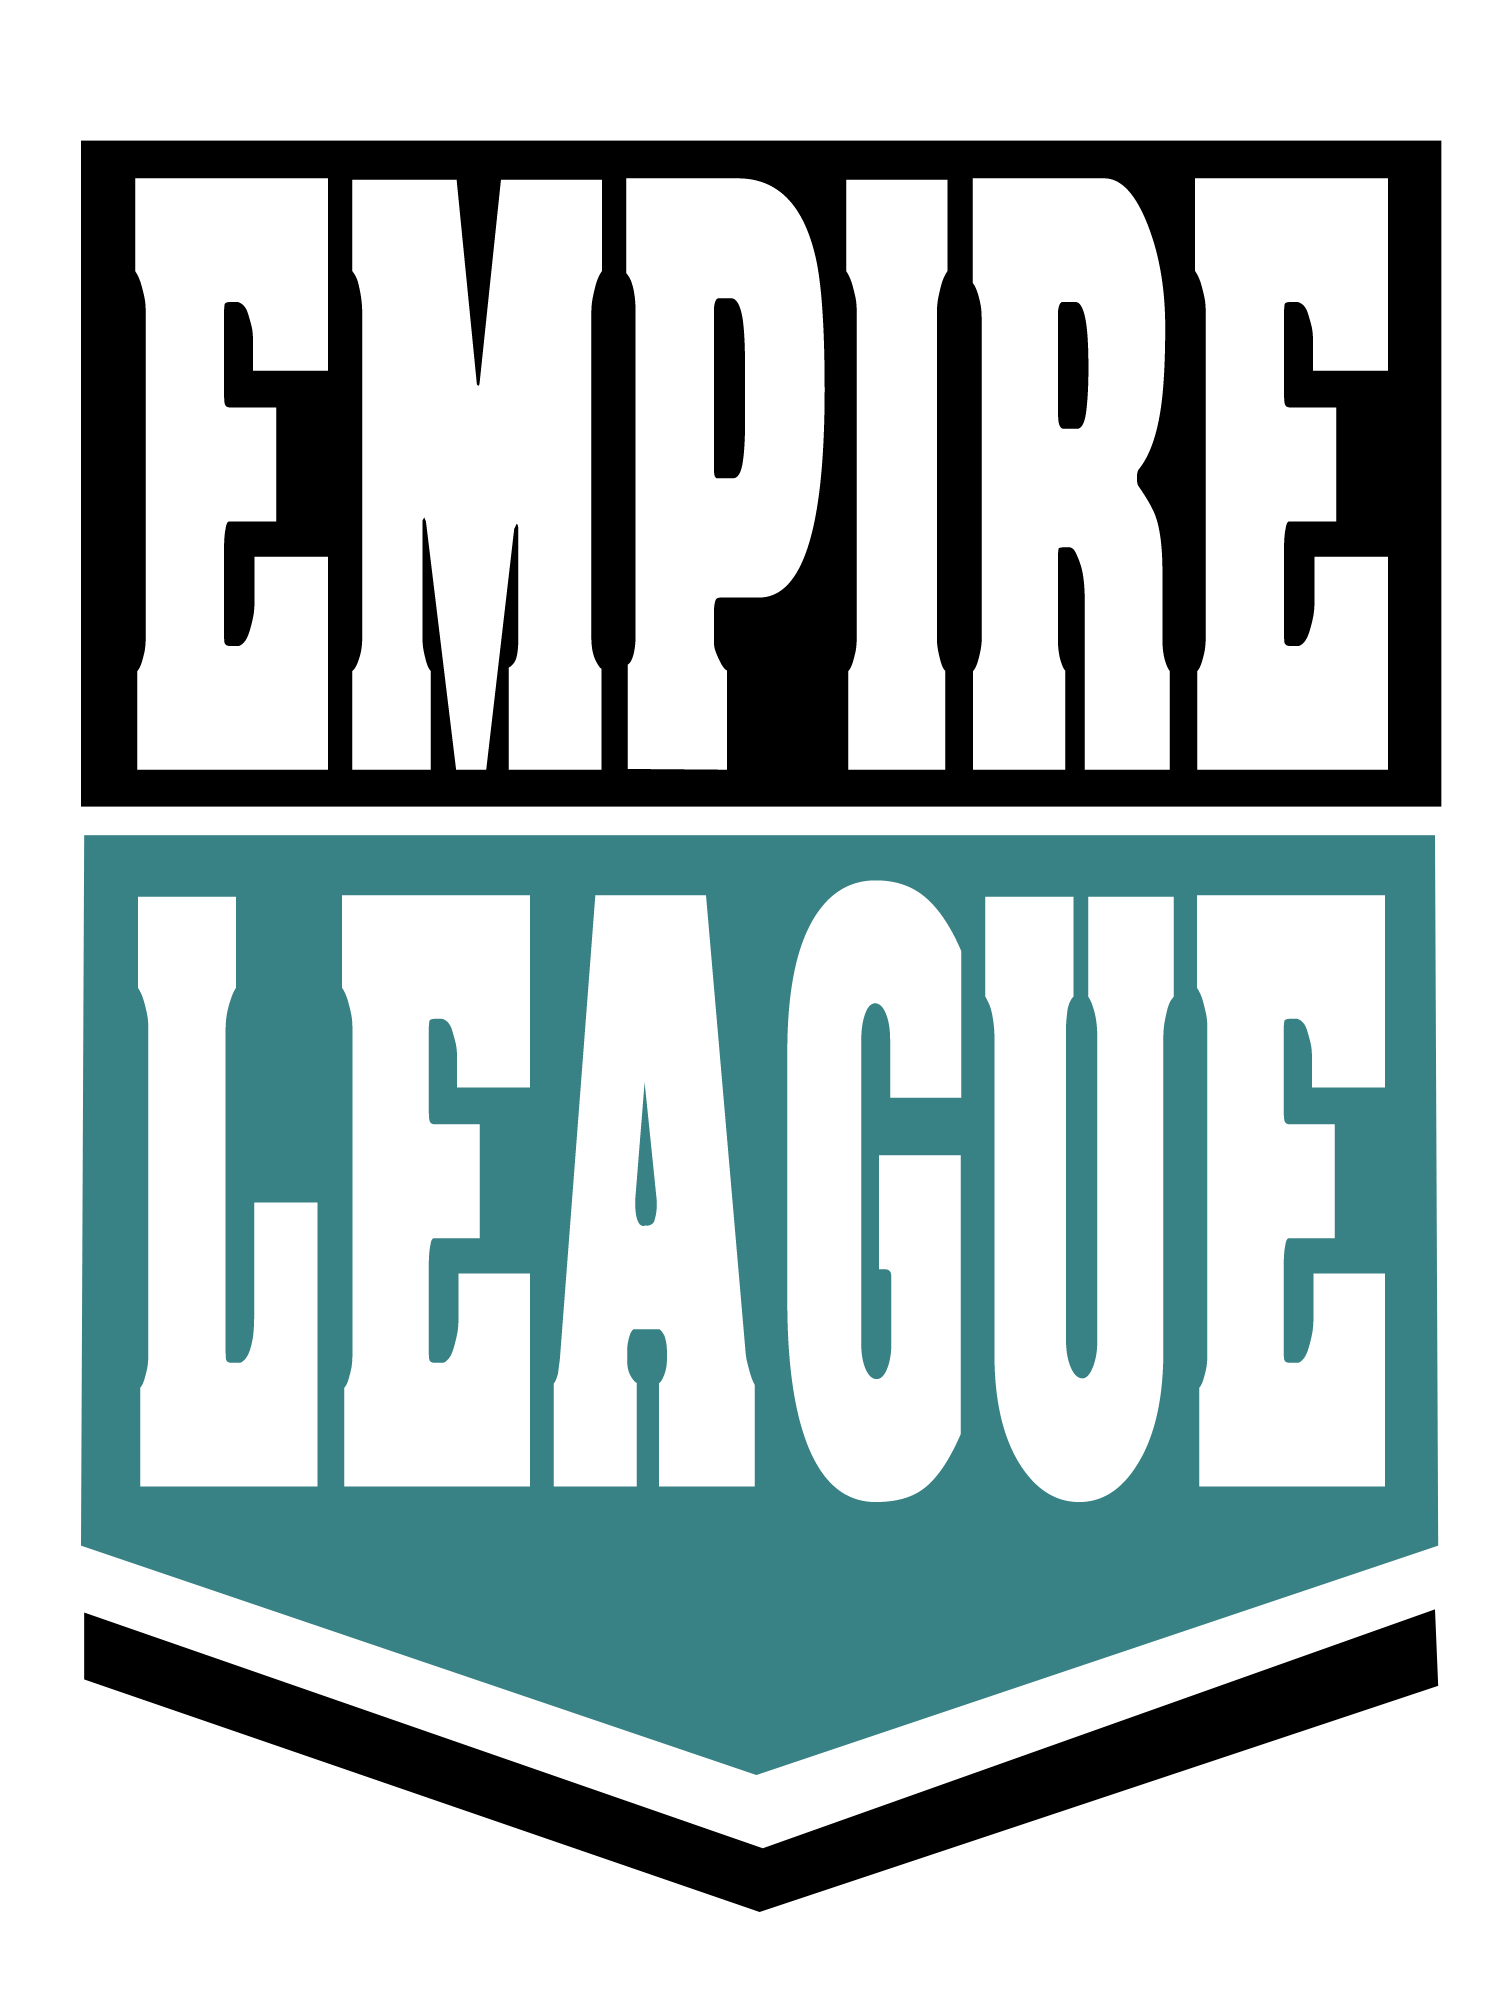 Empire Baseball League